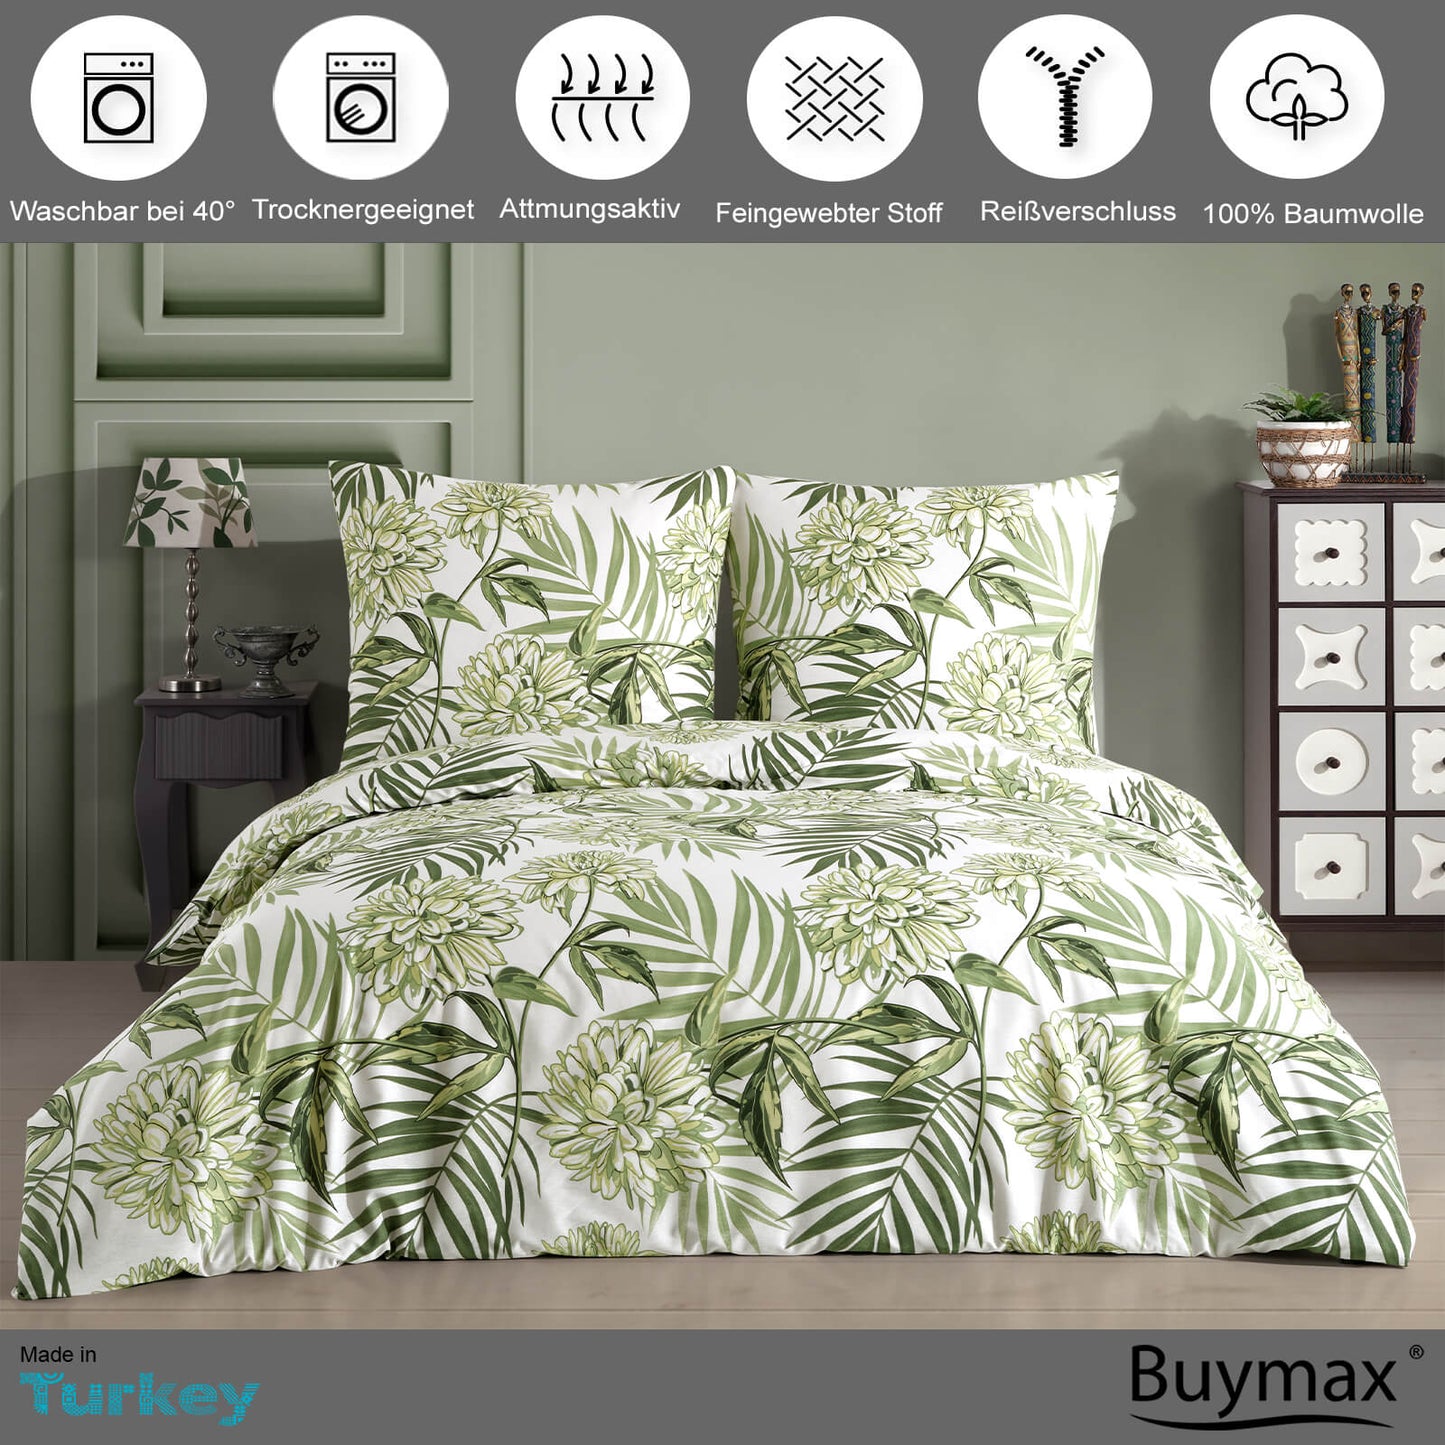 Renforcé Bettwäsche "amazing green" aus Baumwolle - Buymax